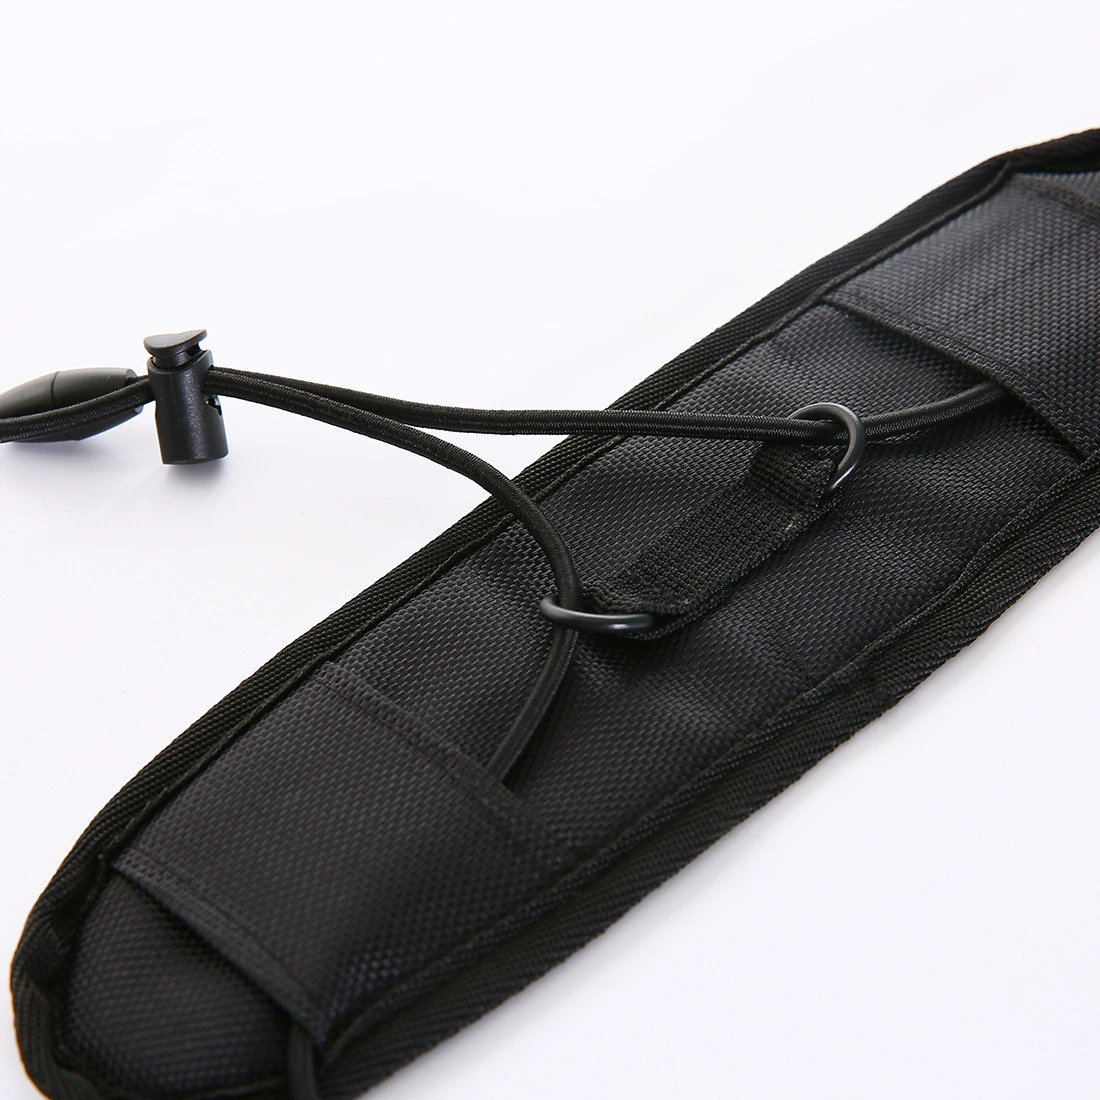 Nylon Elastic Travel Luggage Suitcase Adjustable Belt Carry-on Bag Bungee Strap Wbb11037